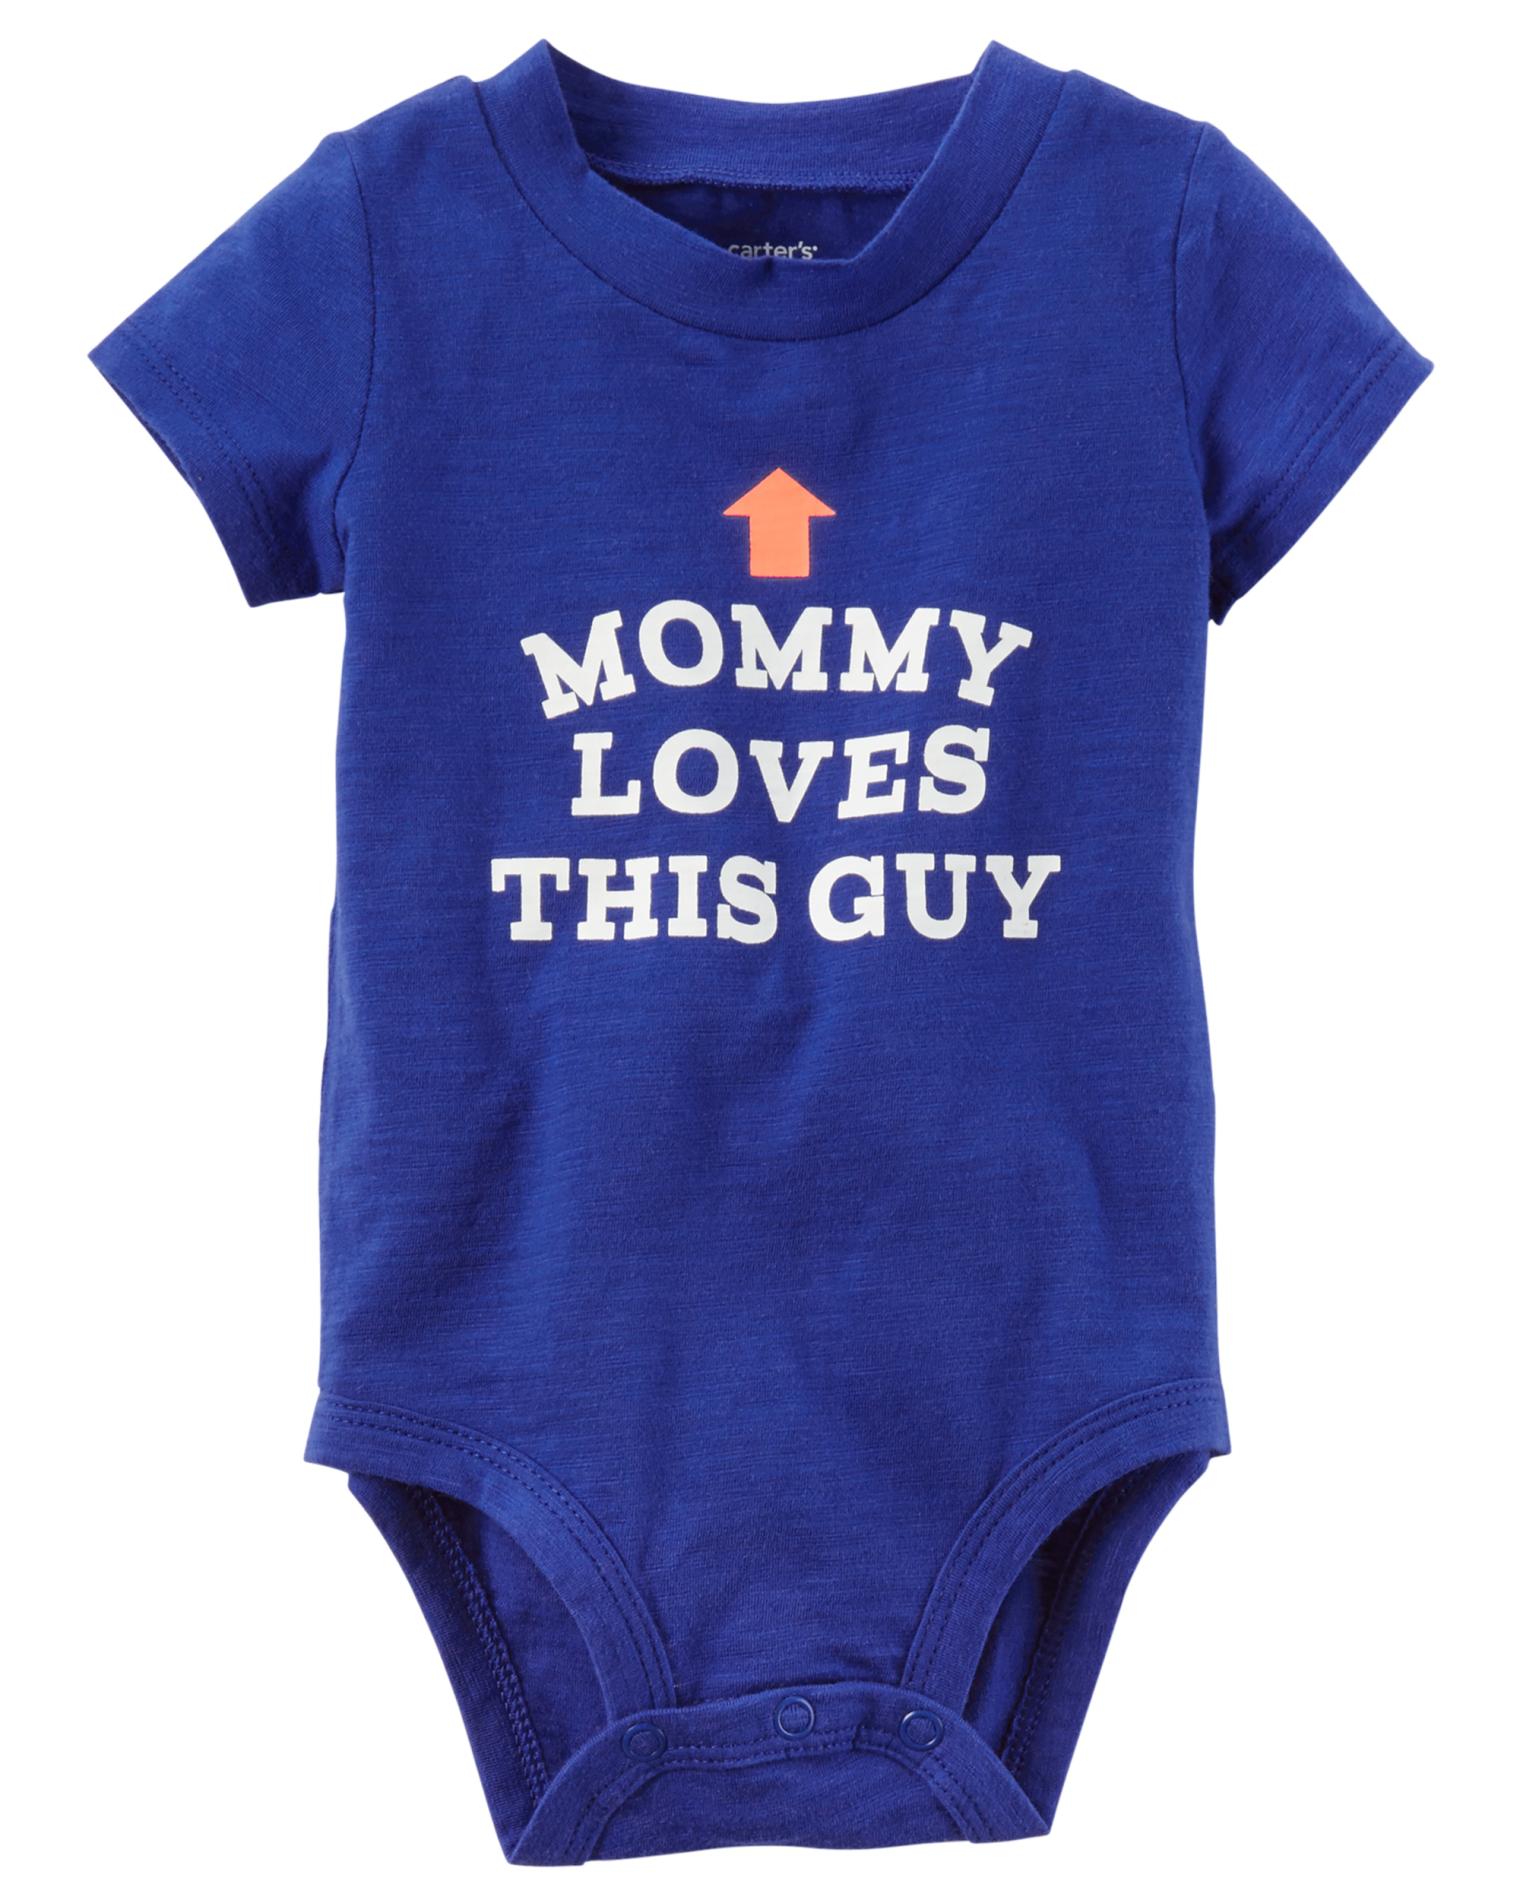 Carter's Newborn & Infant Boys' Graphic Bodysuit - Mommy Loves This Guy